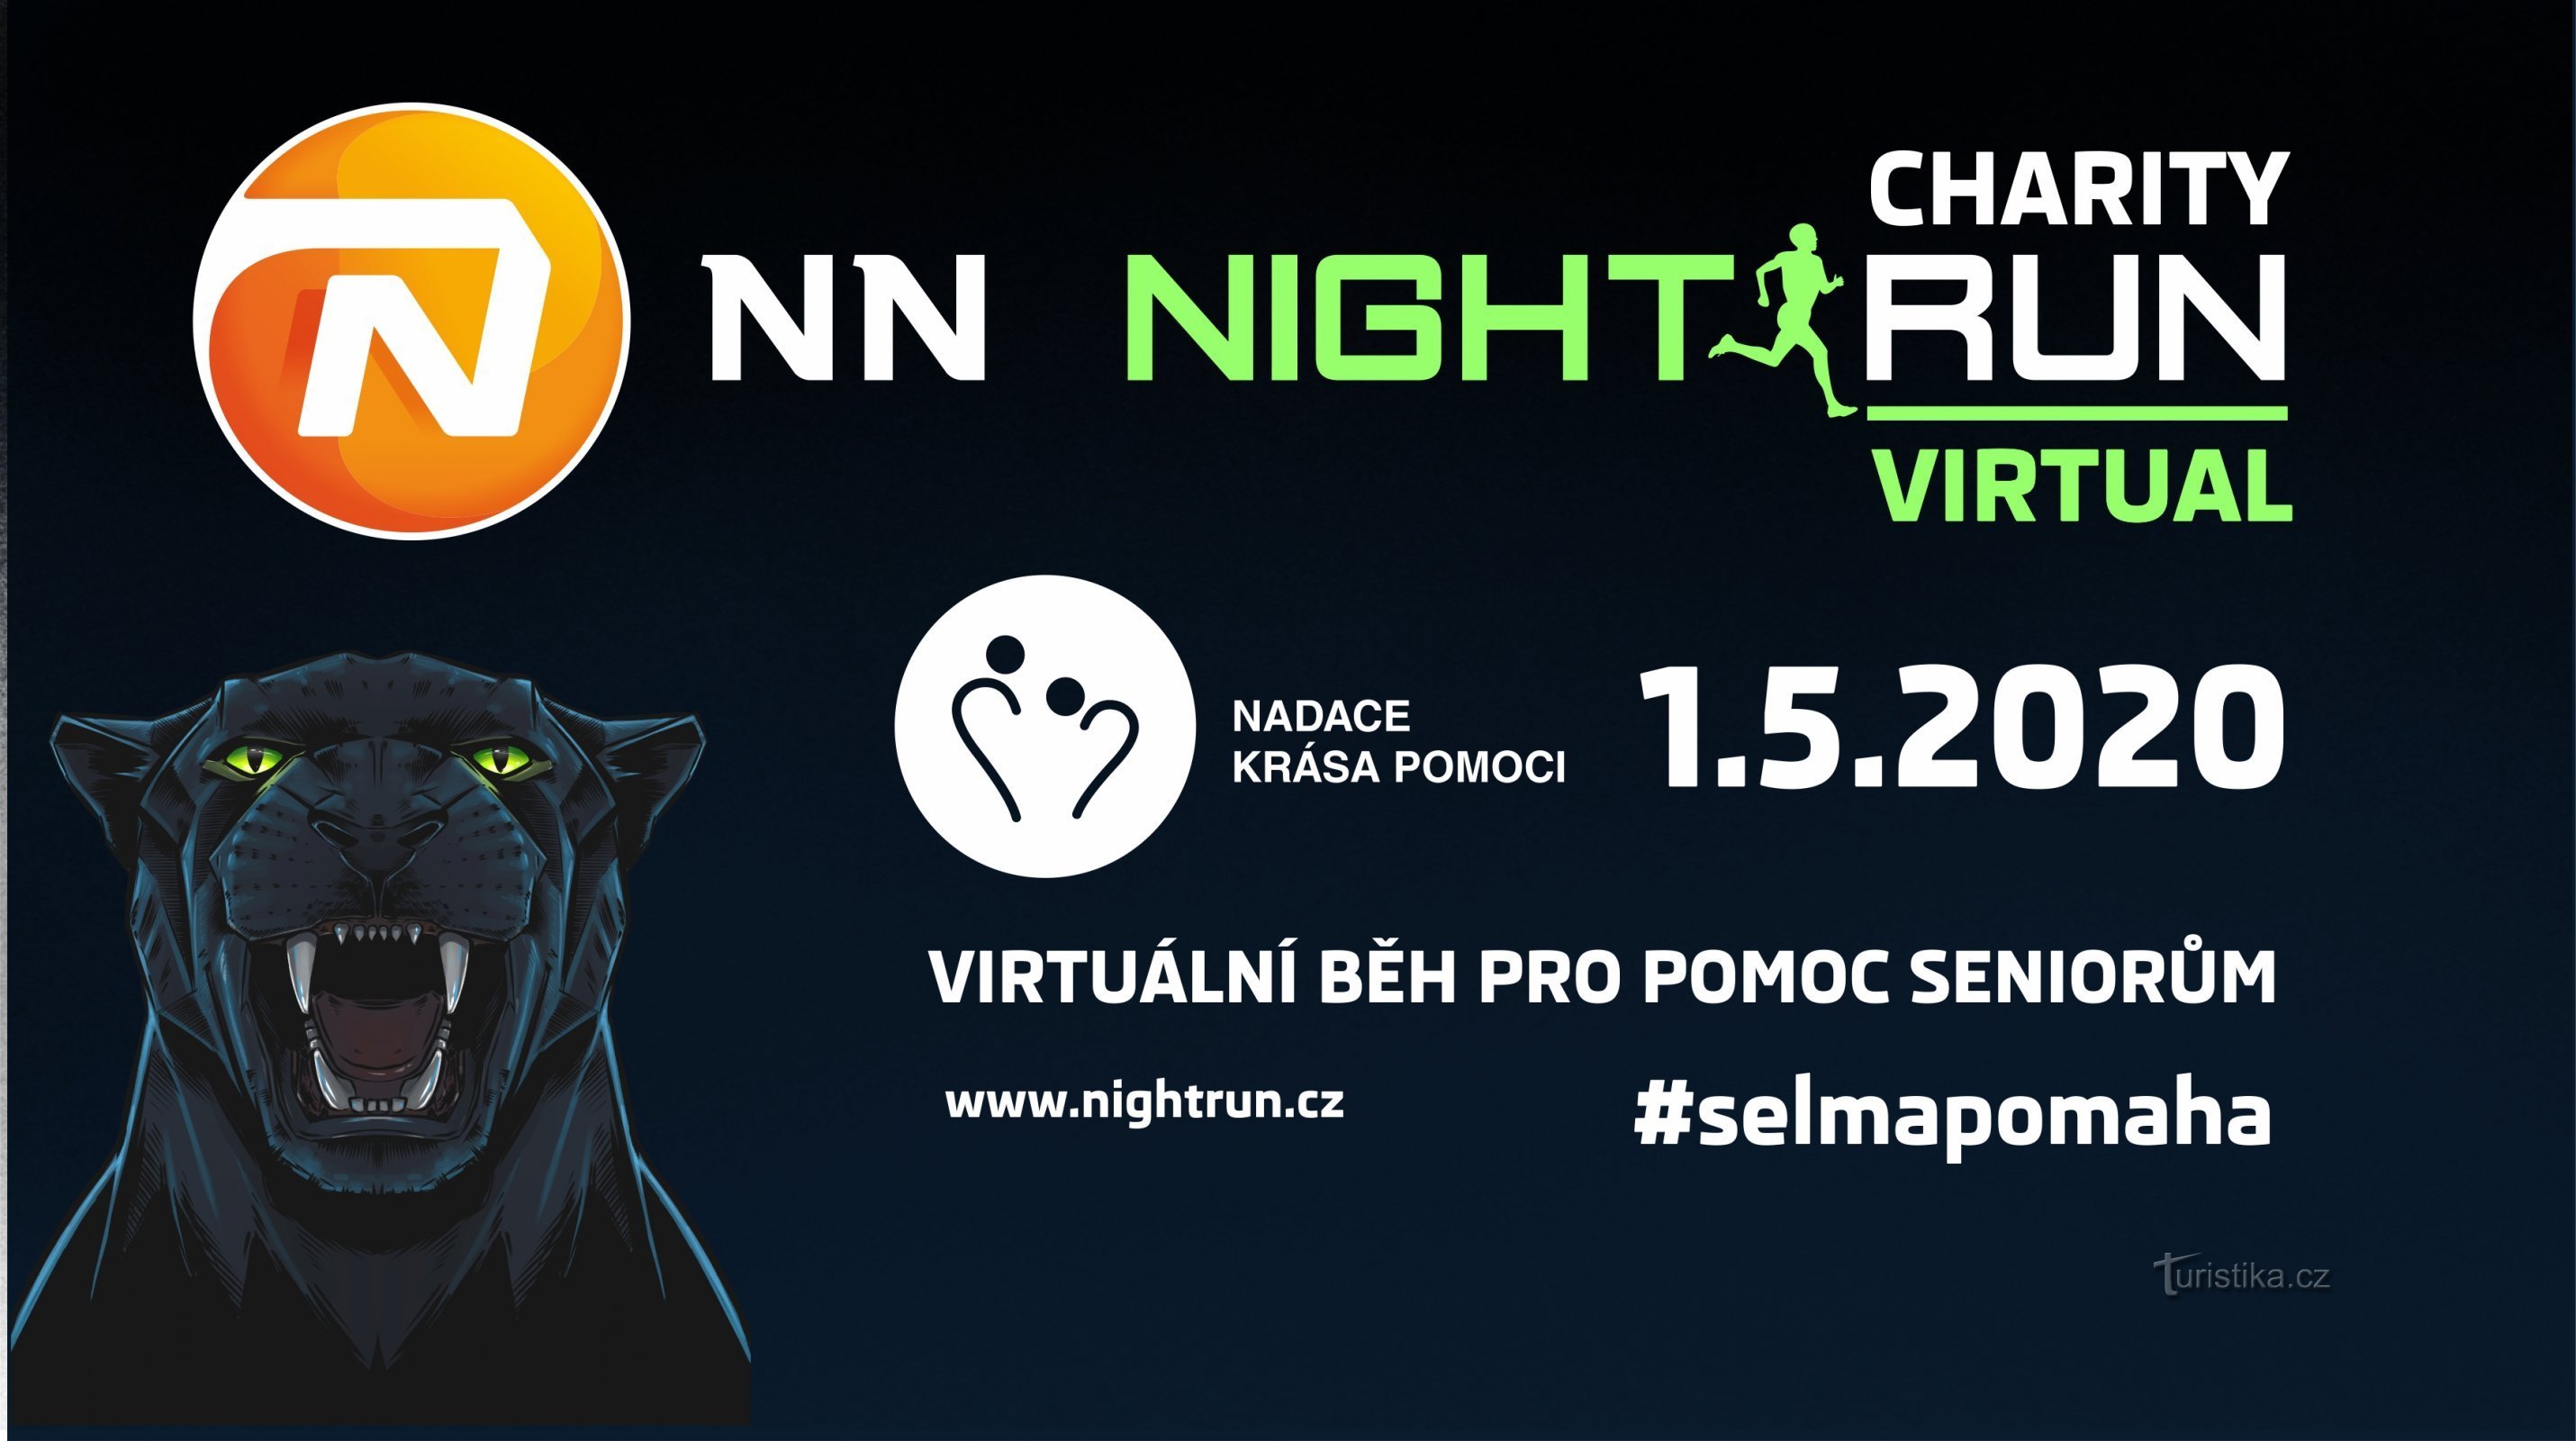 Virtual Charity NN Night Run, uma instituição de caridade para ajudar os idosos